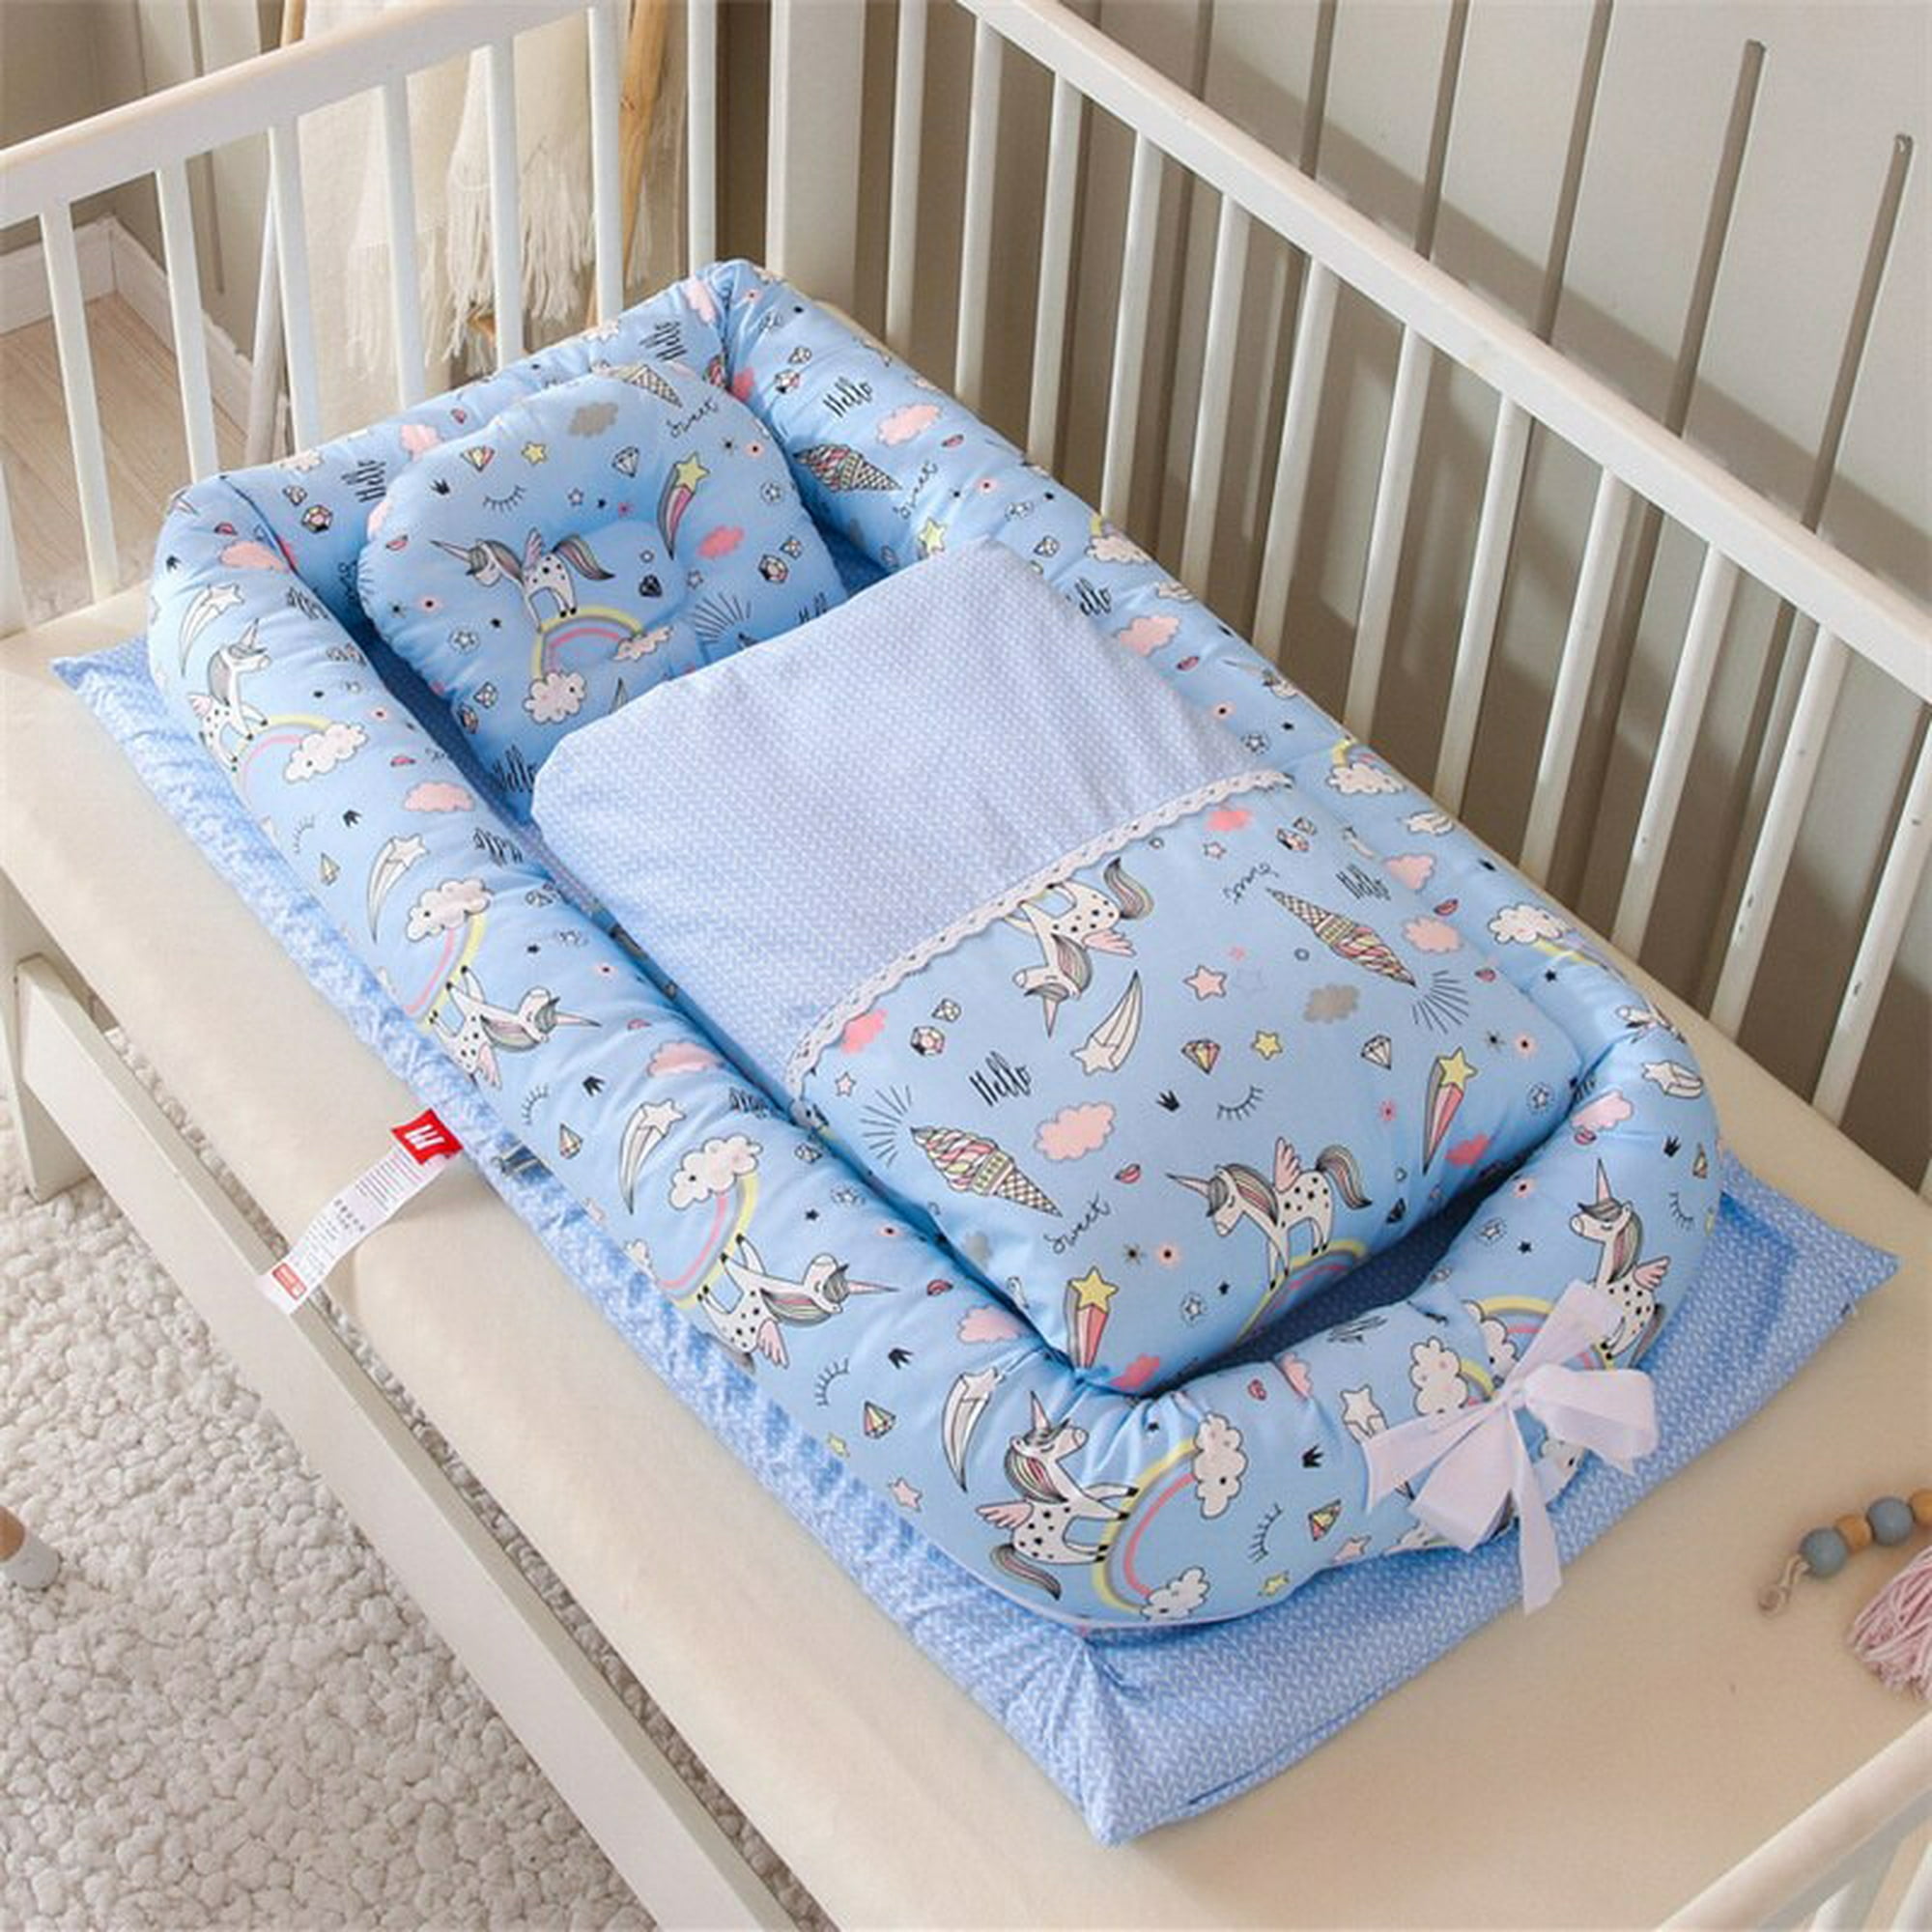 Cama nido suave portátil para bebé, cuna plegable de viaje para dormir,  cuna parachoques para bebés y recién nacidos Fivean unisex